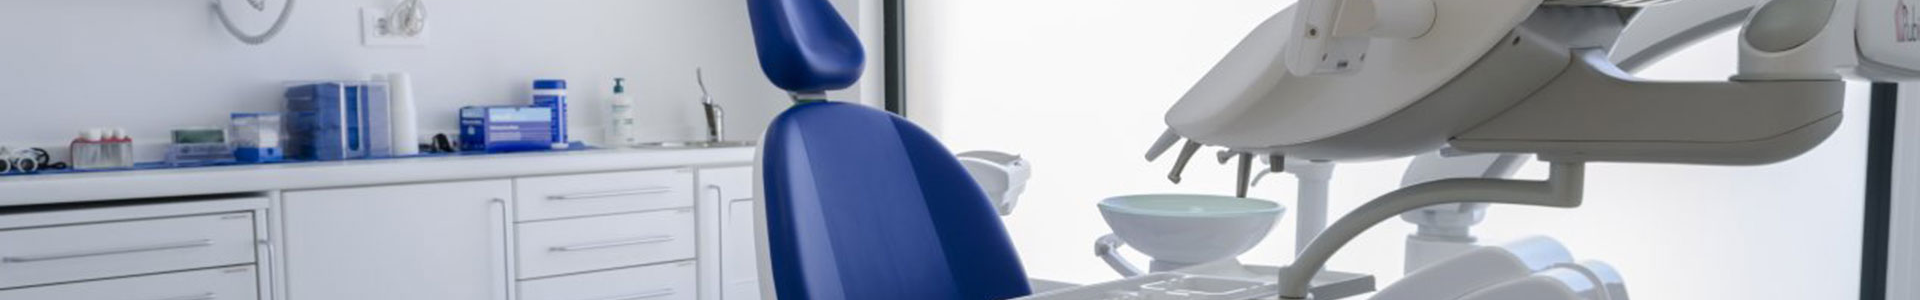 suministrar materiales y maquinaria a las clínicas dentales. 
